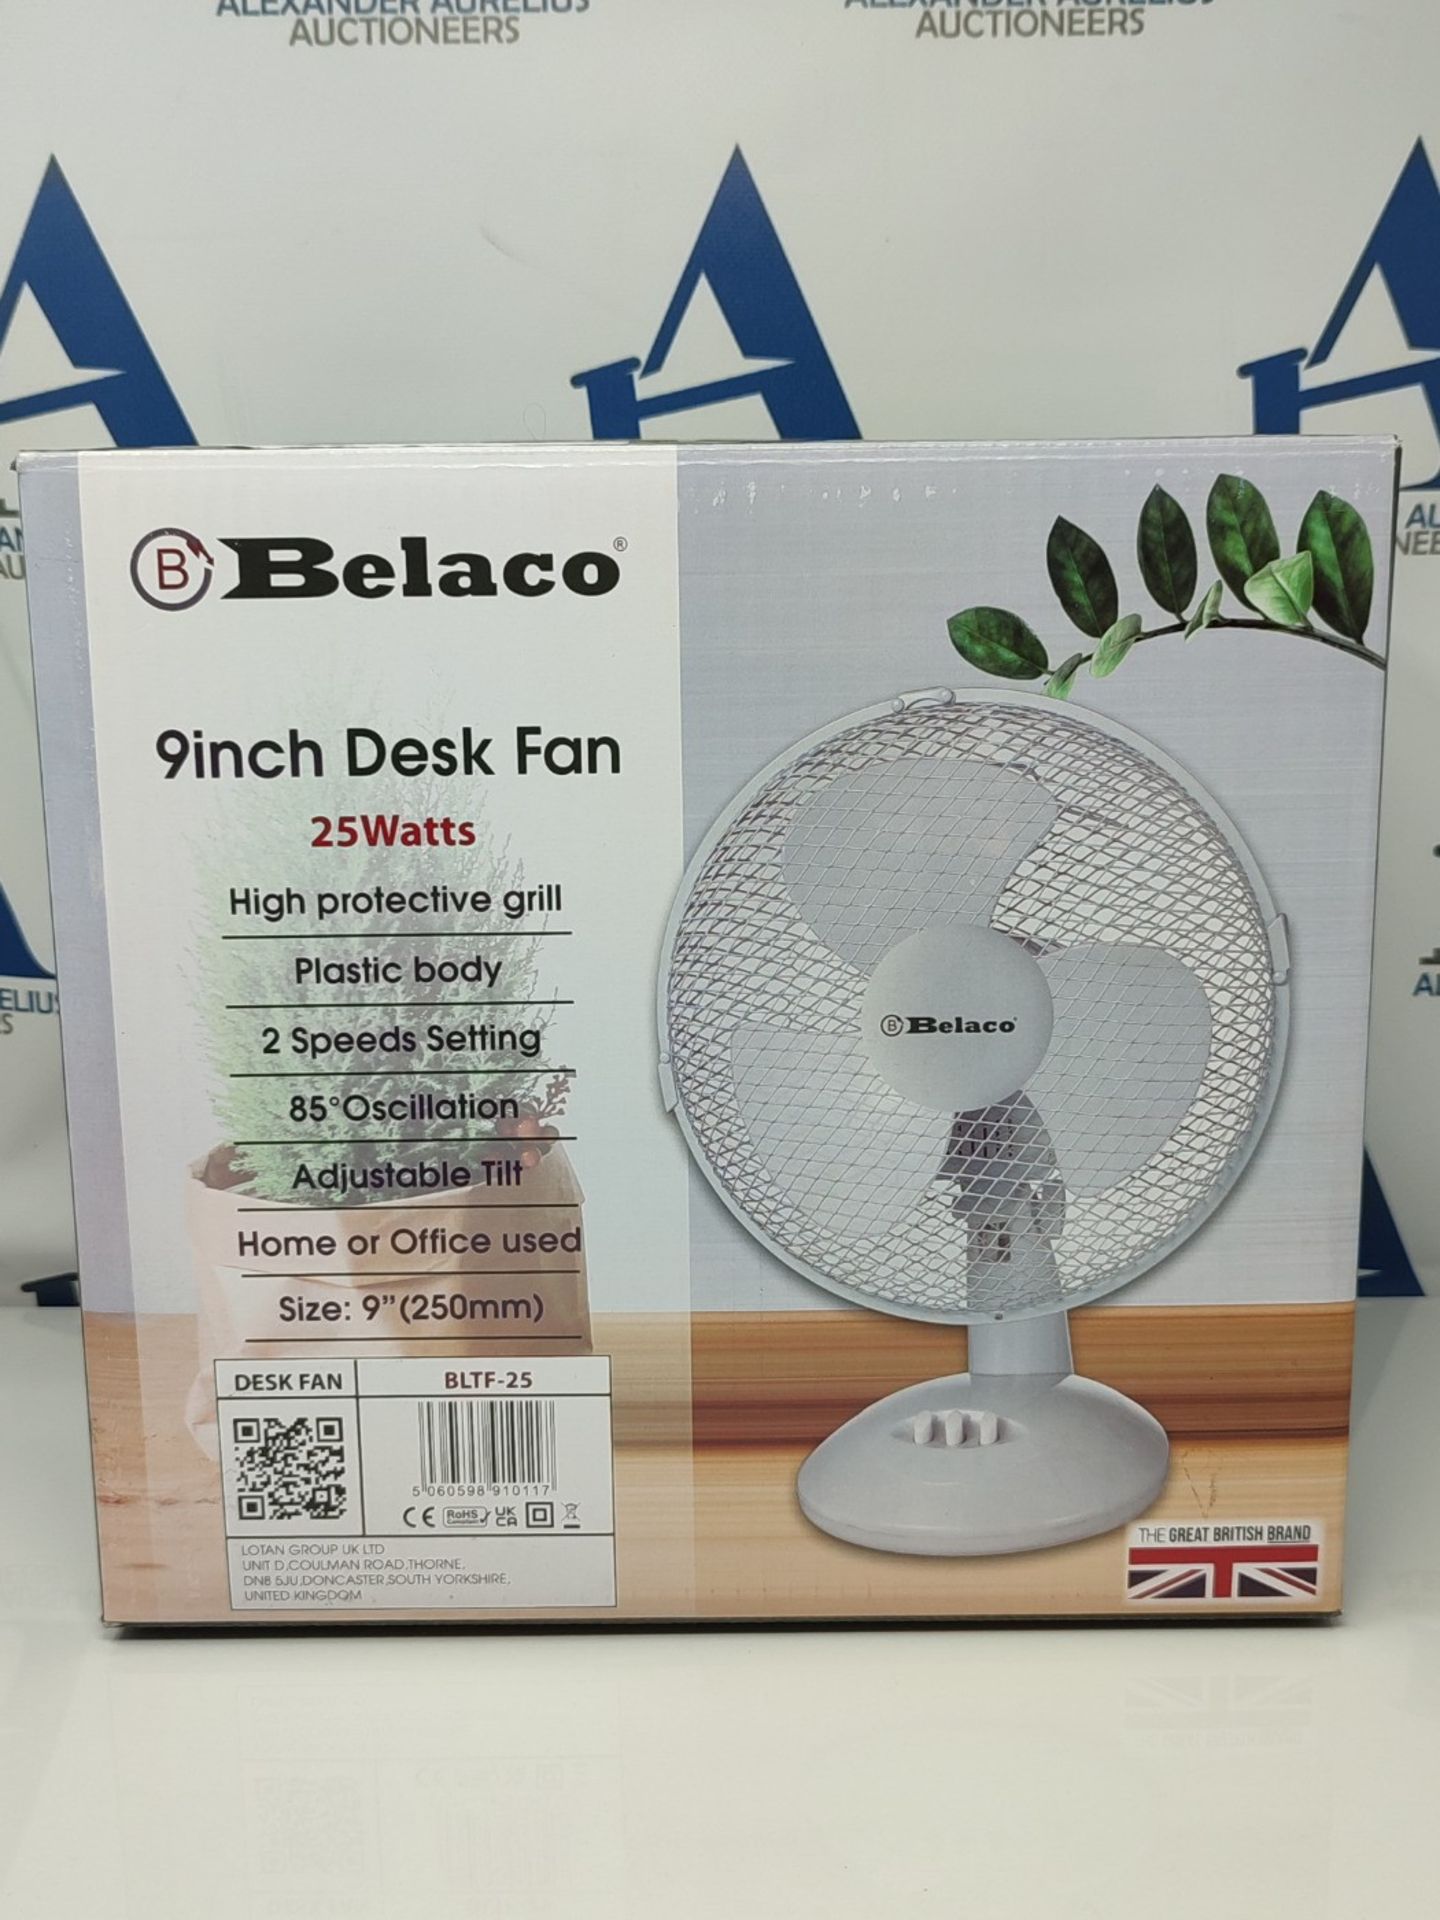 [INCOMPLETE] Belaco 9inch Table Fan Desk Fan with 2 Speed Oscillating cooling fan Stan - Image 2 of 3